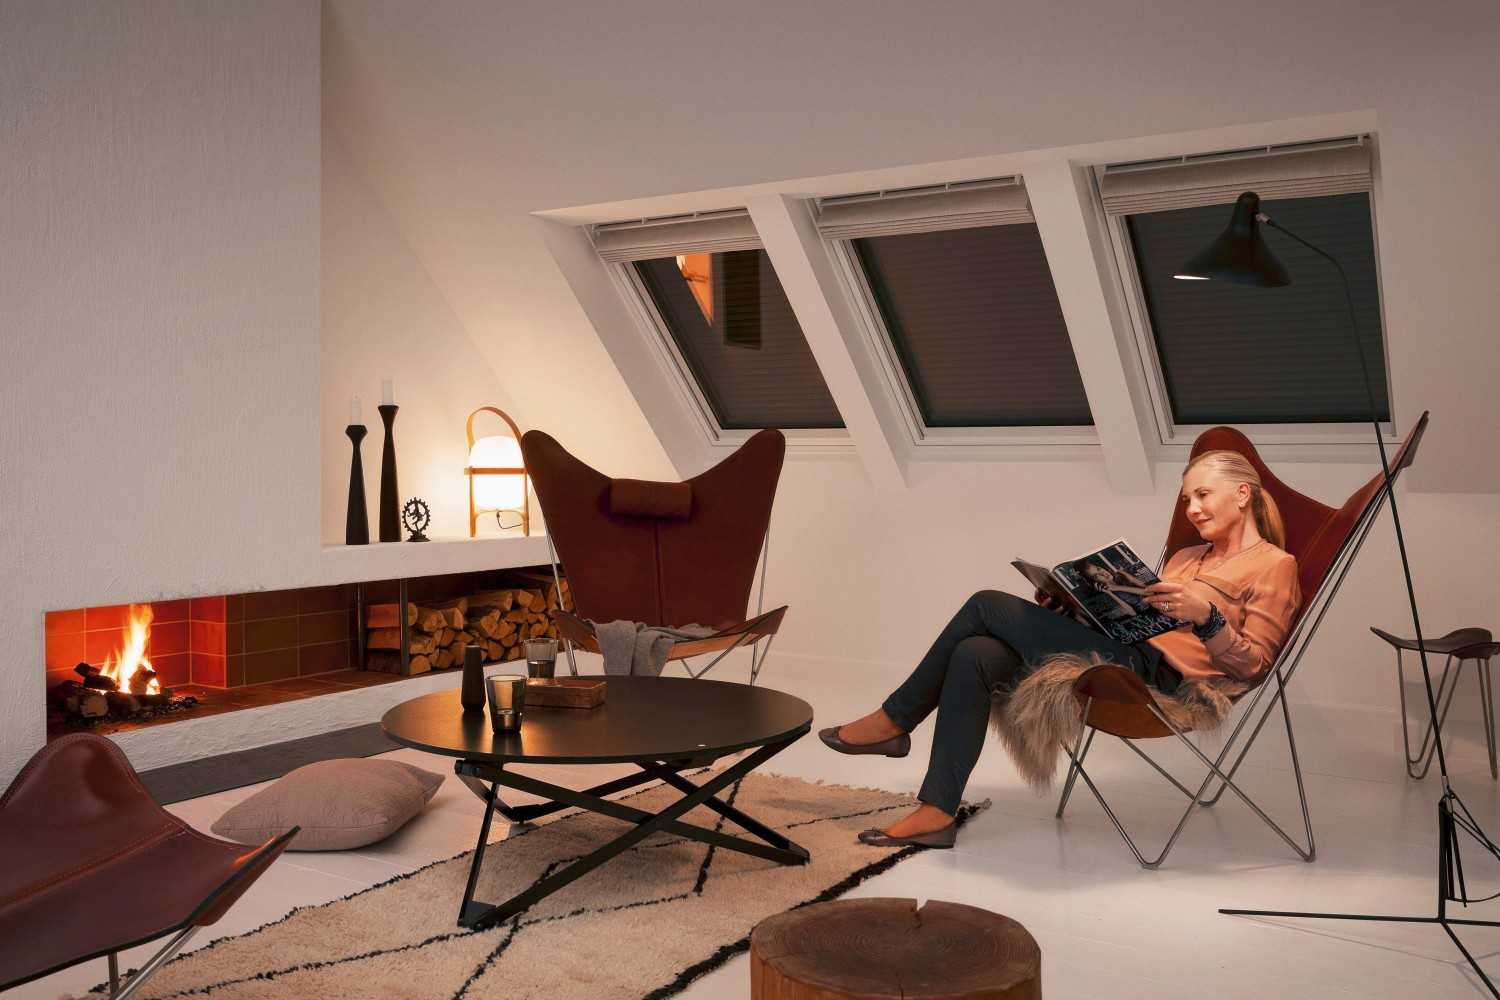 Rund ums Haus Velux-Rollläden an Dachfenstern erhöhen den Wohnkomfort und sparen Energie - News, Bild 1